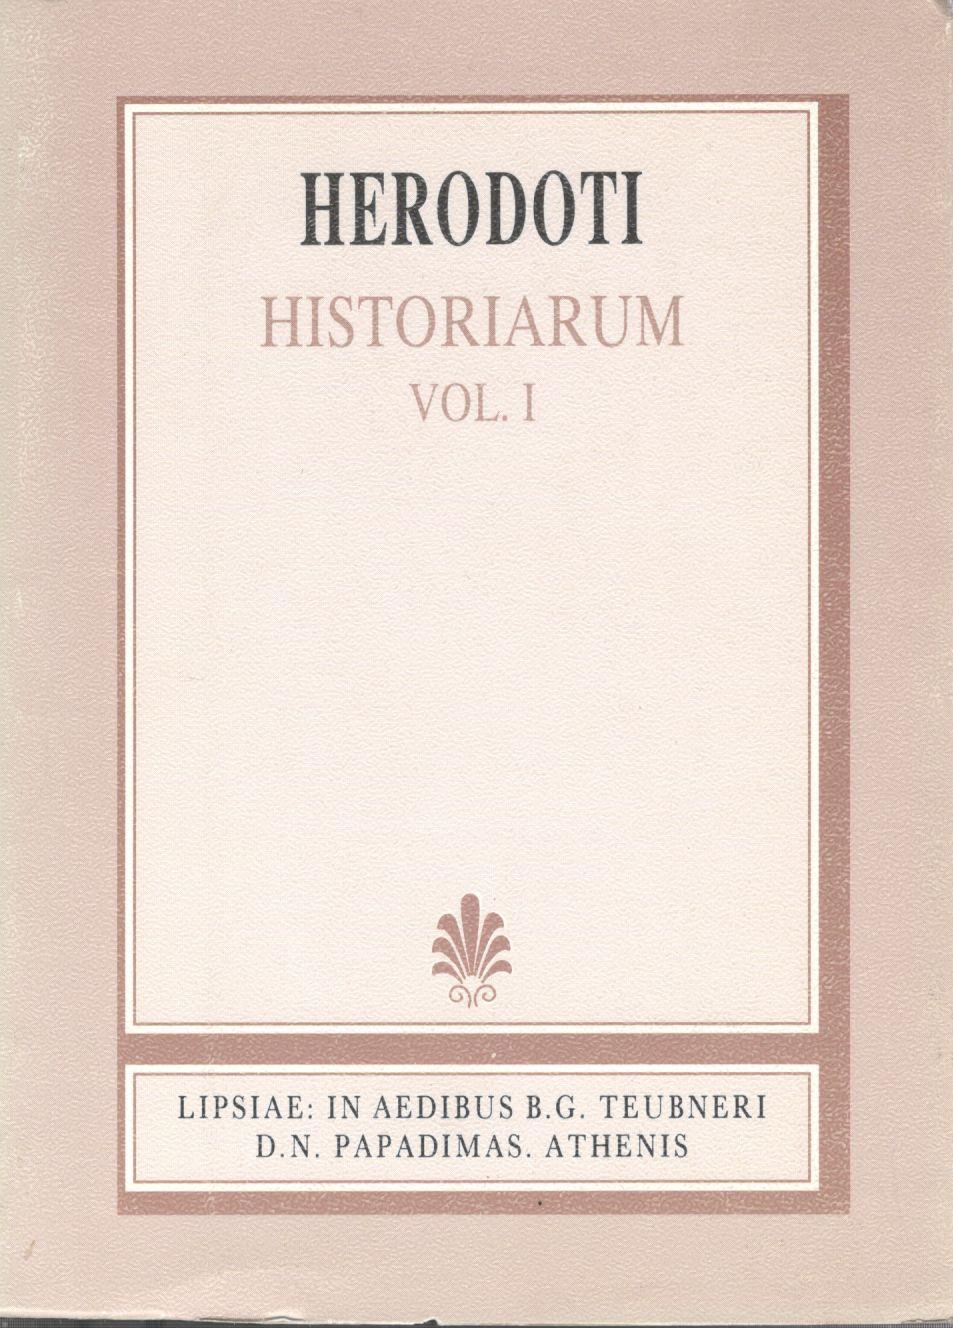 Herodoti, Historiarum, Vol. I [Ηροδότου, Ιστορίαι, τ. Α', βιβλία 1-4]